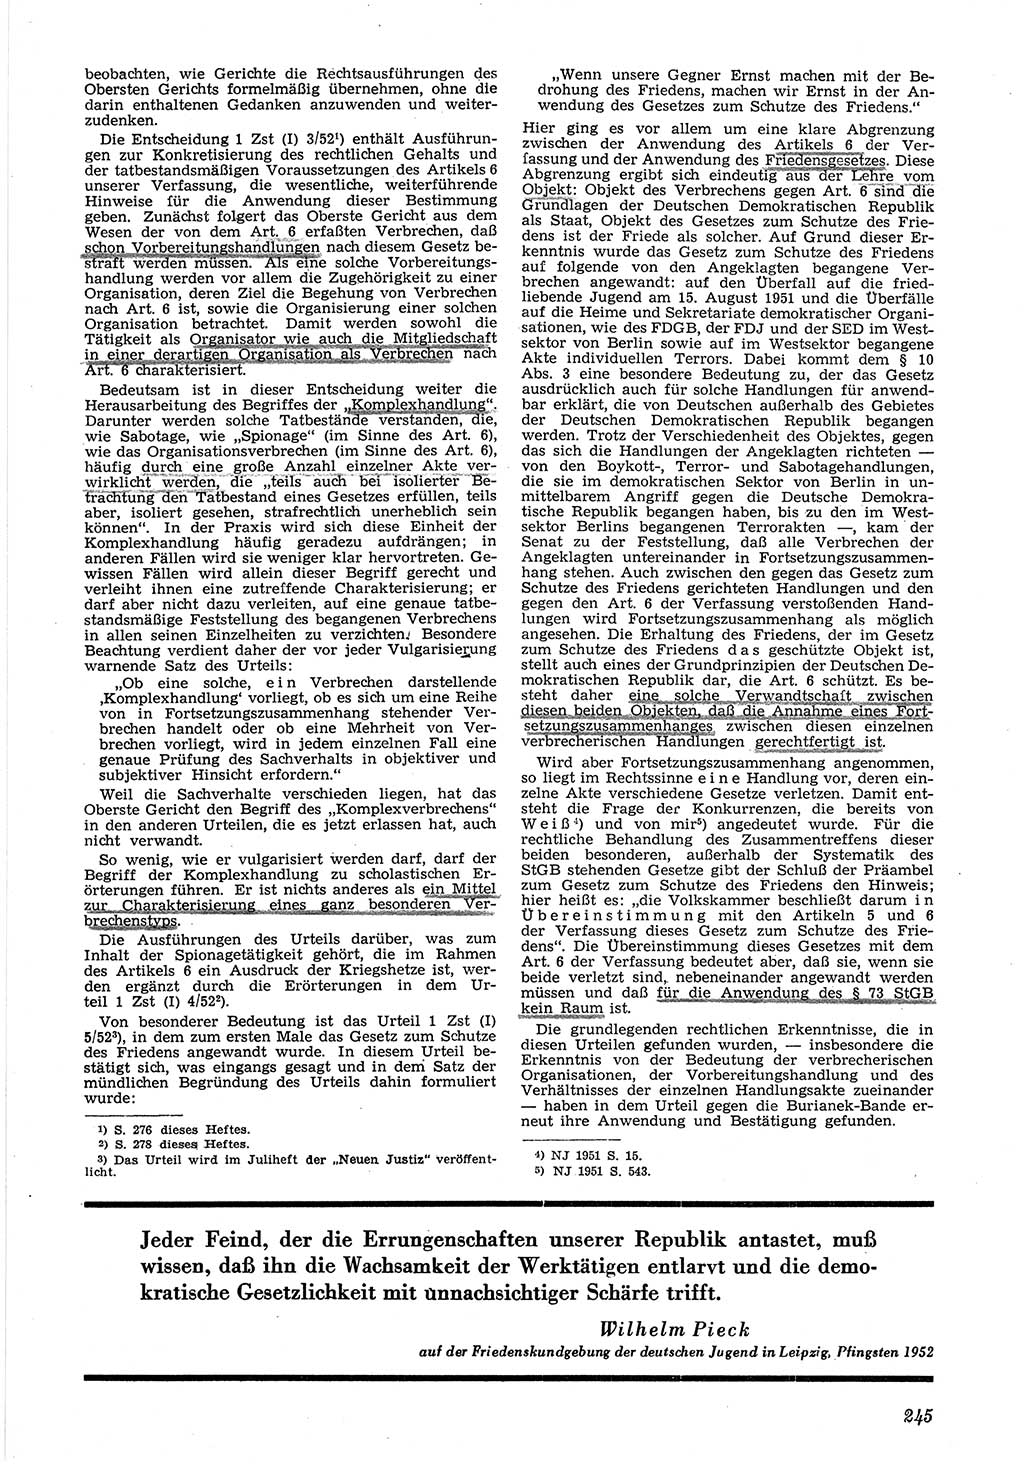 Neue Justiz (NJ), Zeitschrift für Recht und Rechtswissenschaft [Deutsche Demokratische Republik (DDR)], 6. Jahrgang 1952, Seite 245 (NJ DDR 1952, S. 245)